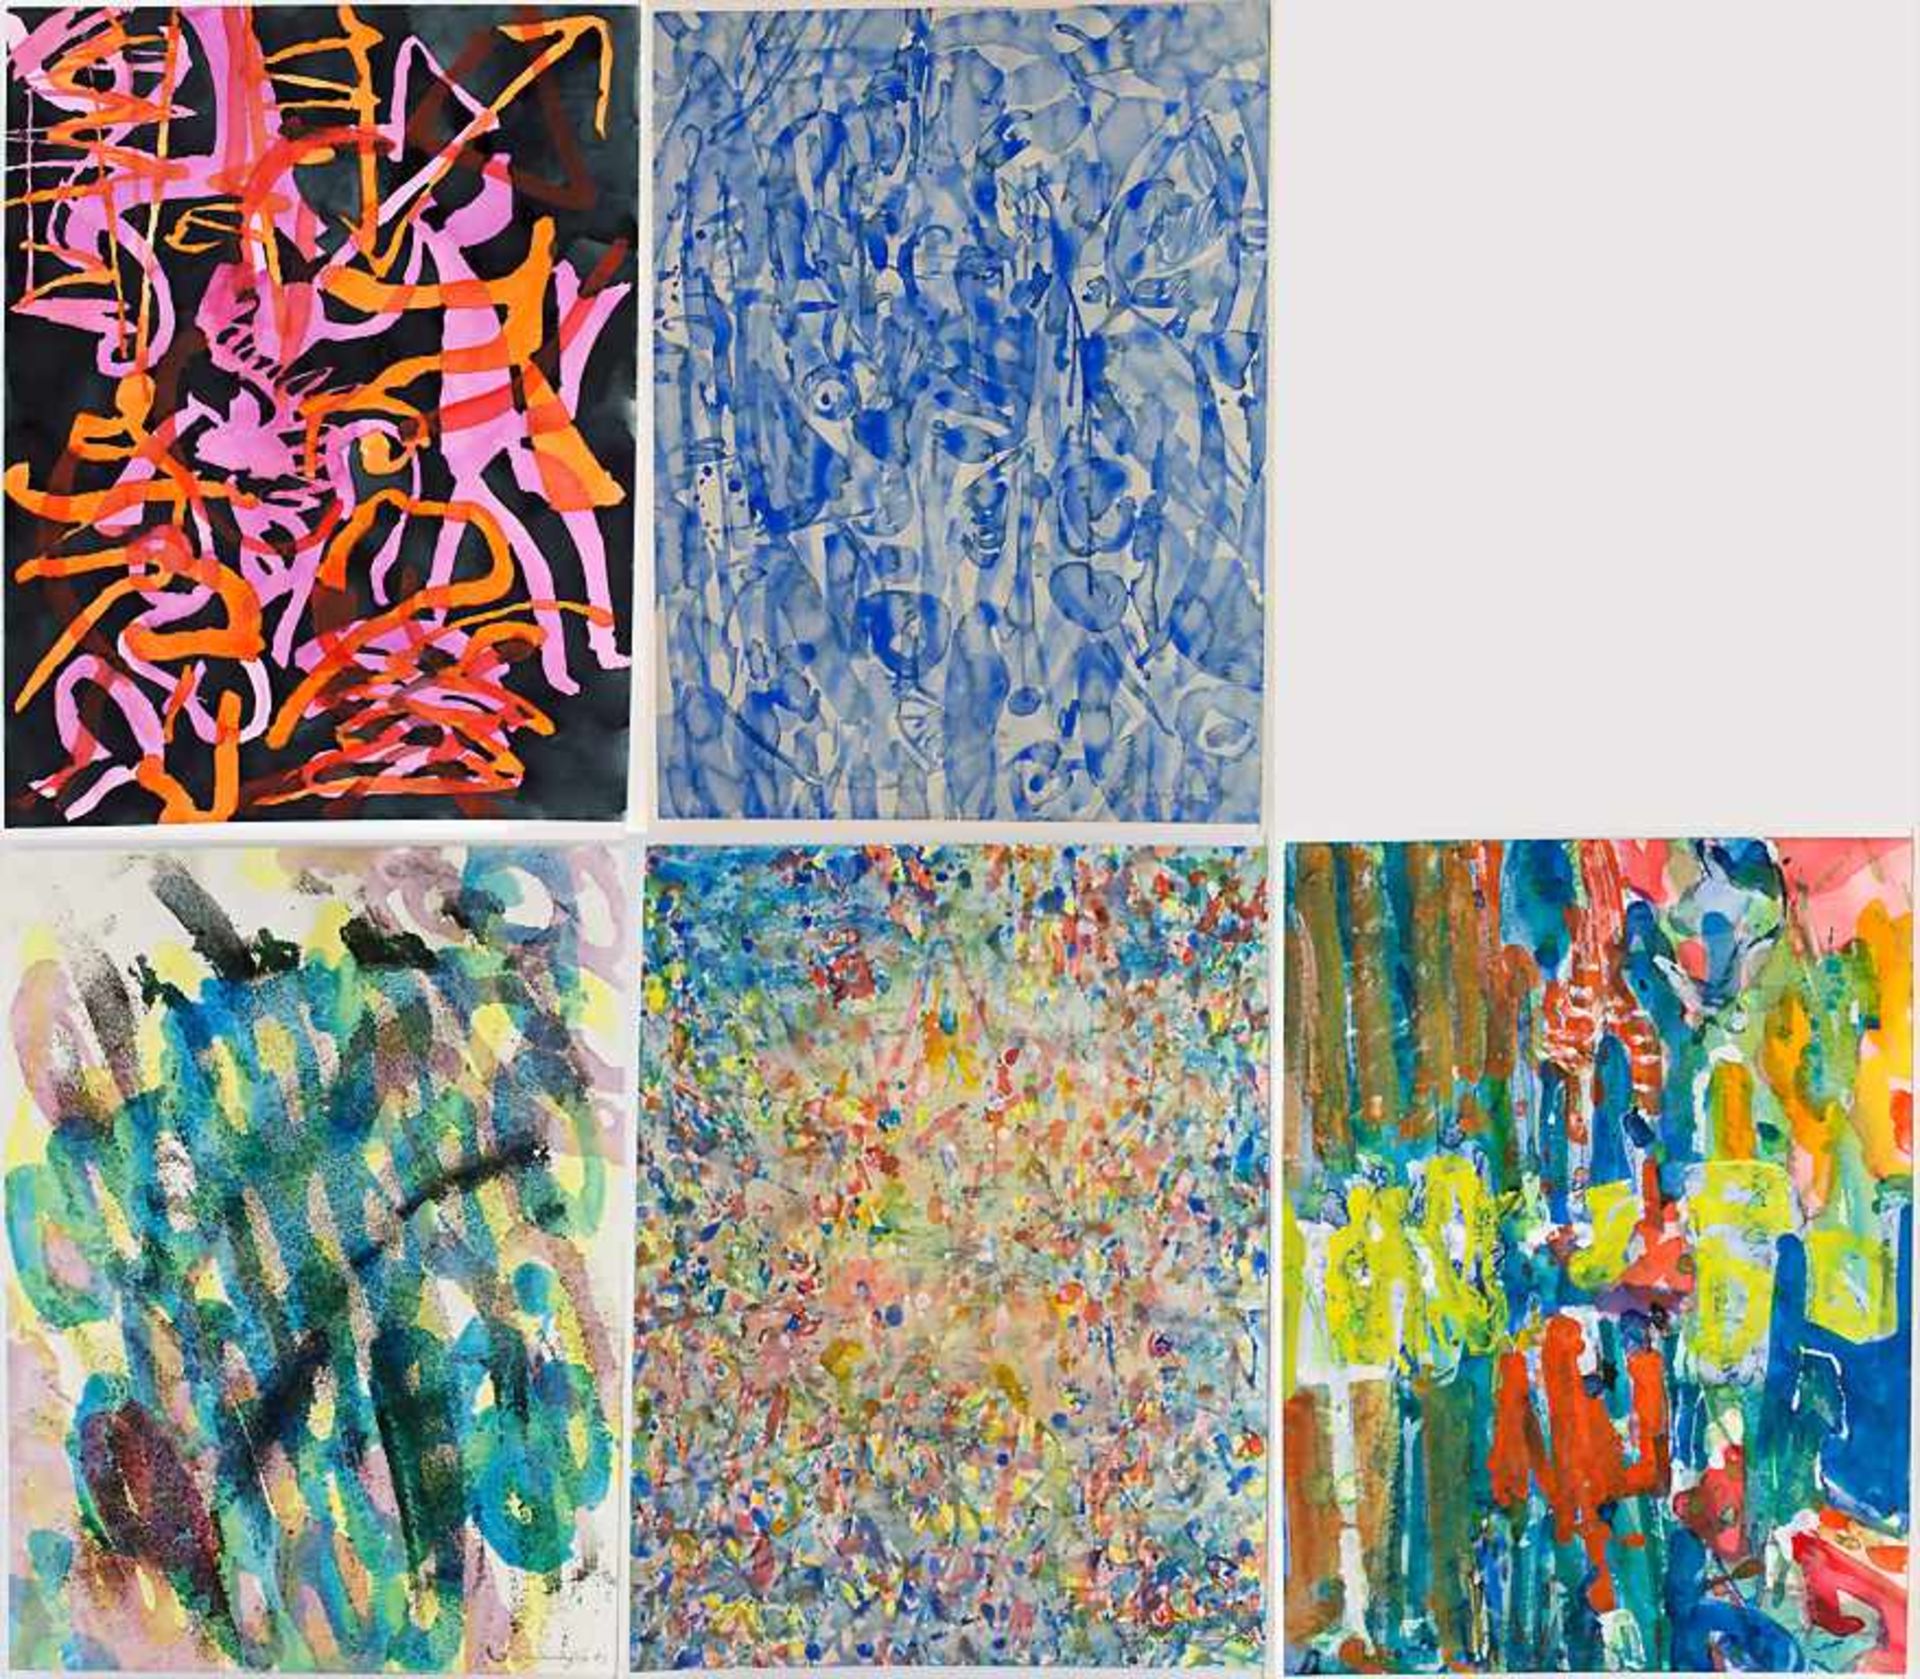 Friedrich Schiemann (1919-1991), 5 Abstrakte Kompositionen / A set of 5 abstract